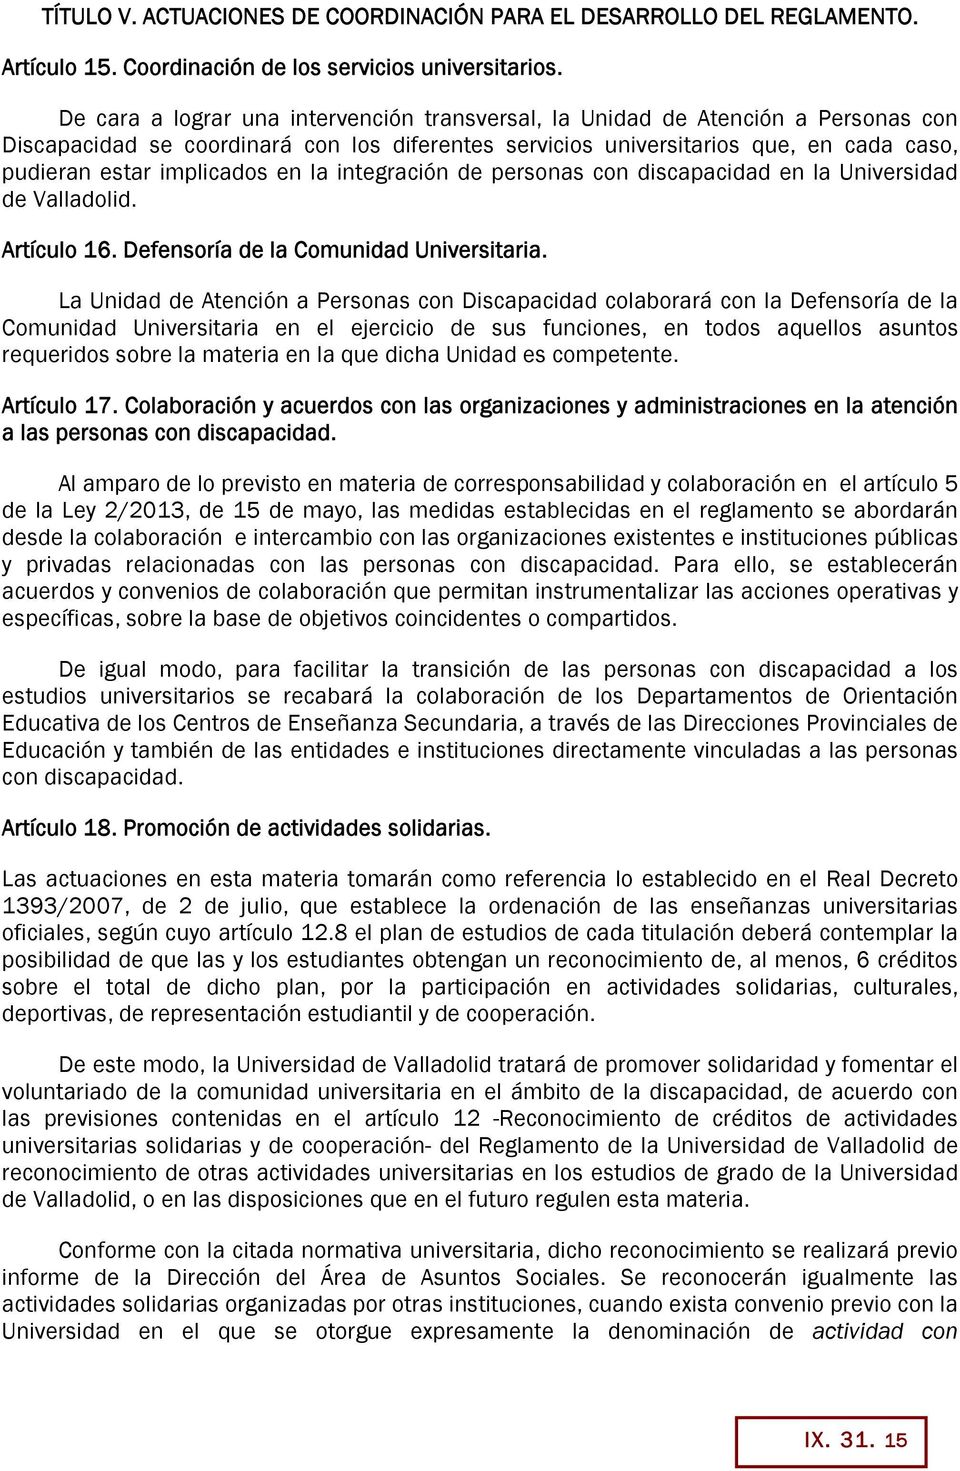 integración de personas con discapacidad en la Universidad de Valladolid. Artículo 16. Defensoría de la Comunidad Universitaria.